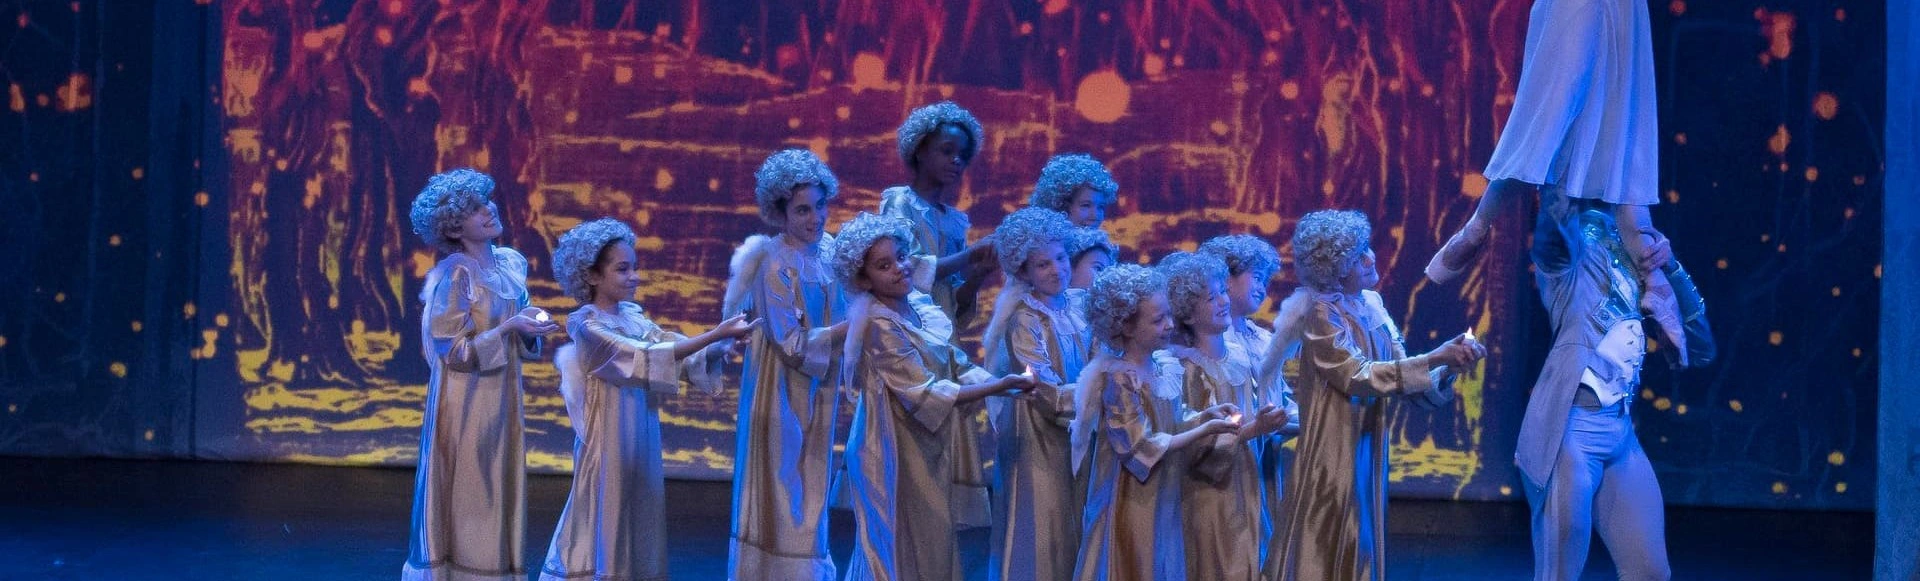 Эрмитажный театр приглашает на сказочный балет «Щелкунчик»
